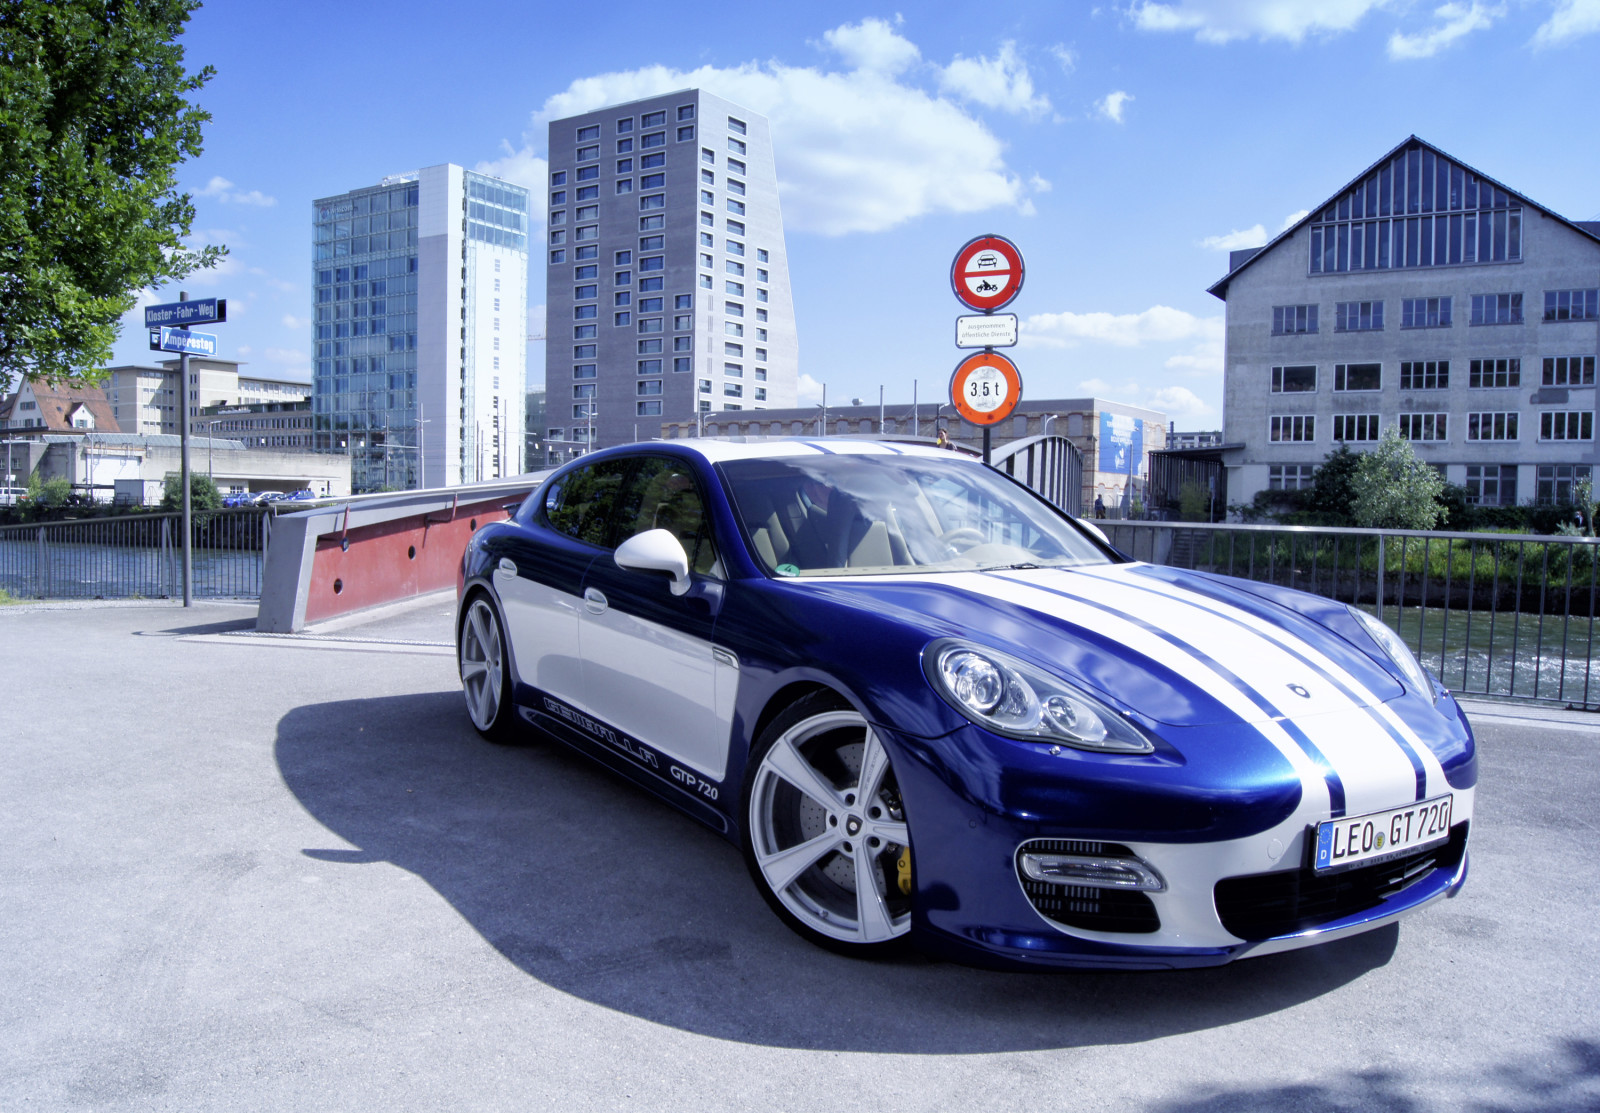 สีน้ำเงิน, รถยนต์, ภาพถ่าย, ปอร์เช่, การปรับเสียง, 2015, Gemballa, GTP 720